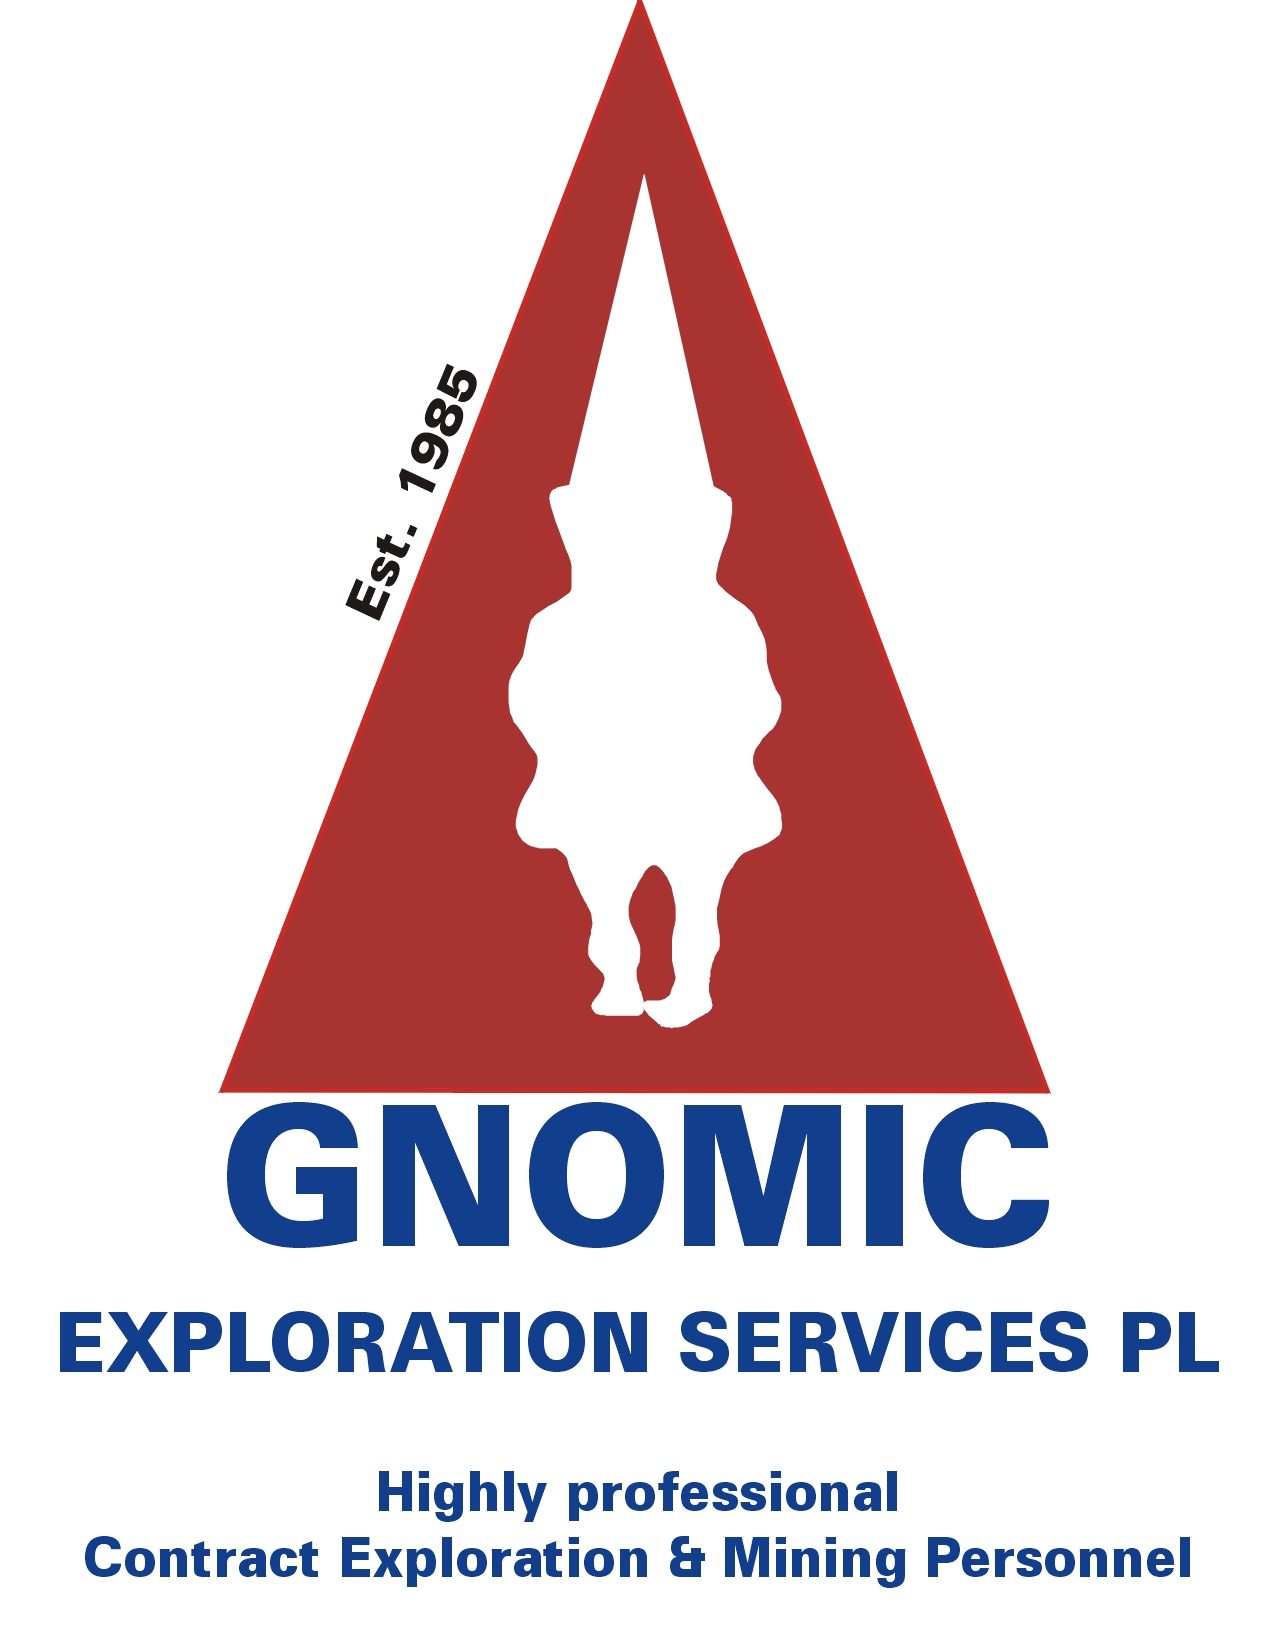 logo Image